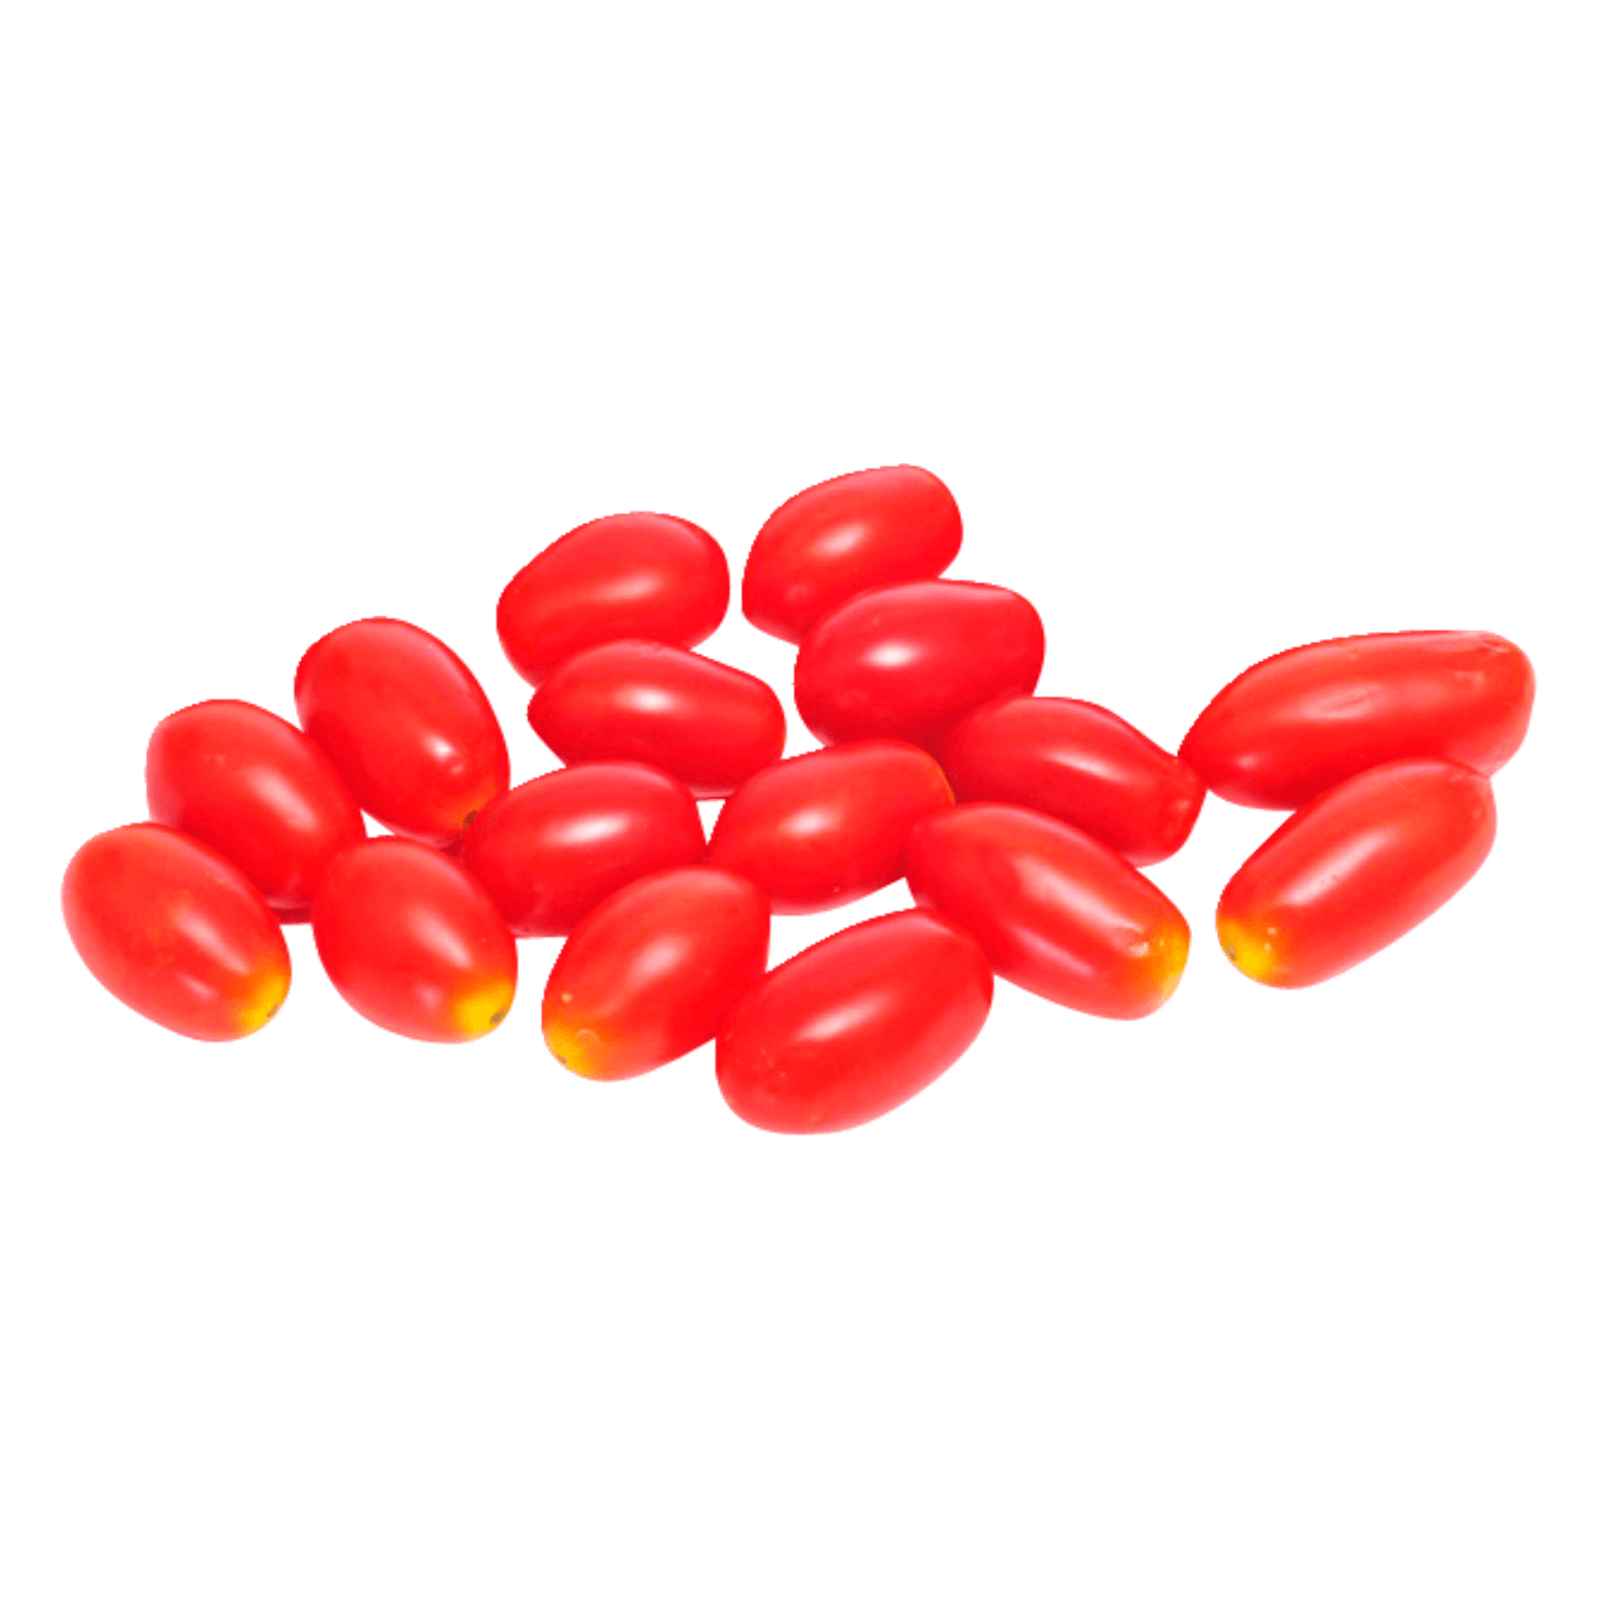 Cherry Romatomaten 250g bei REWE online bestellen!